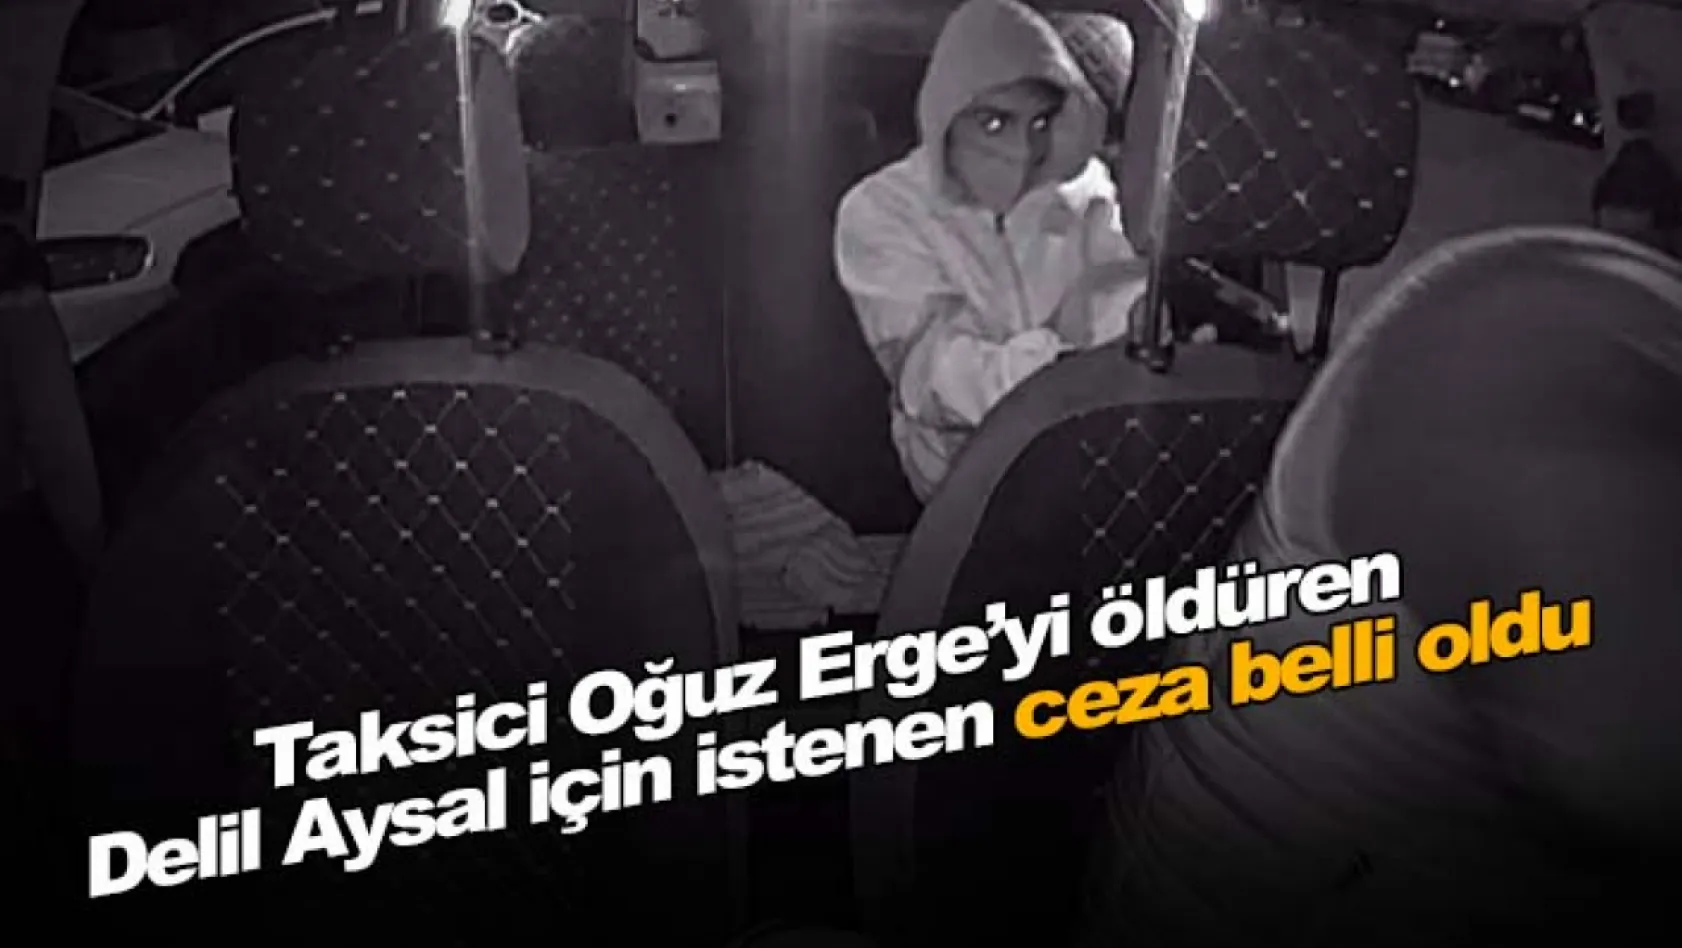 Taksici Oğuz Erge'yi öldüren Delil Aysal için istenen ceza belli oldu